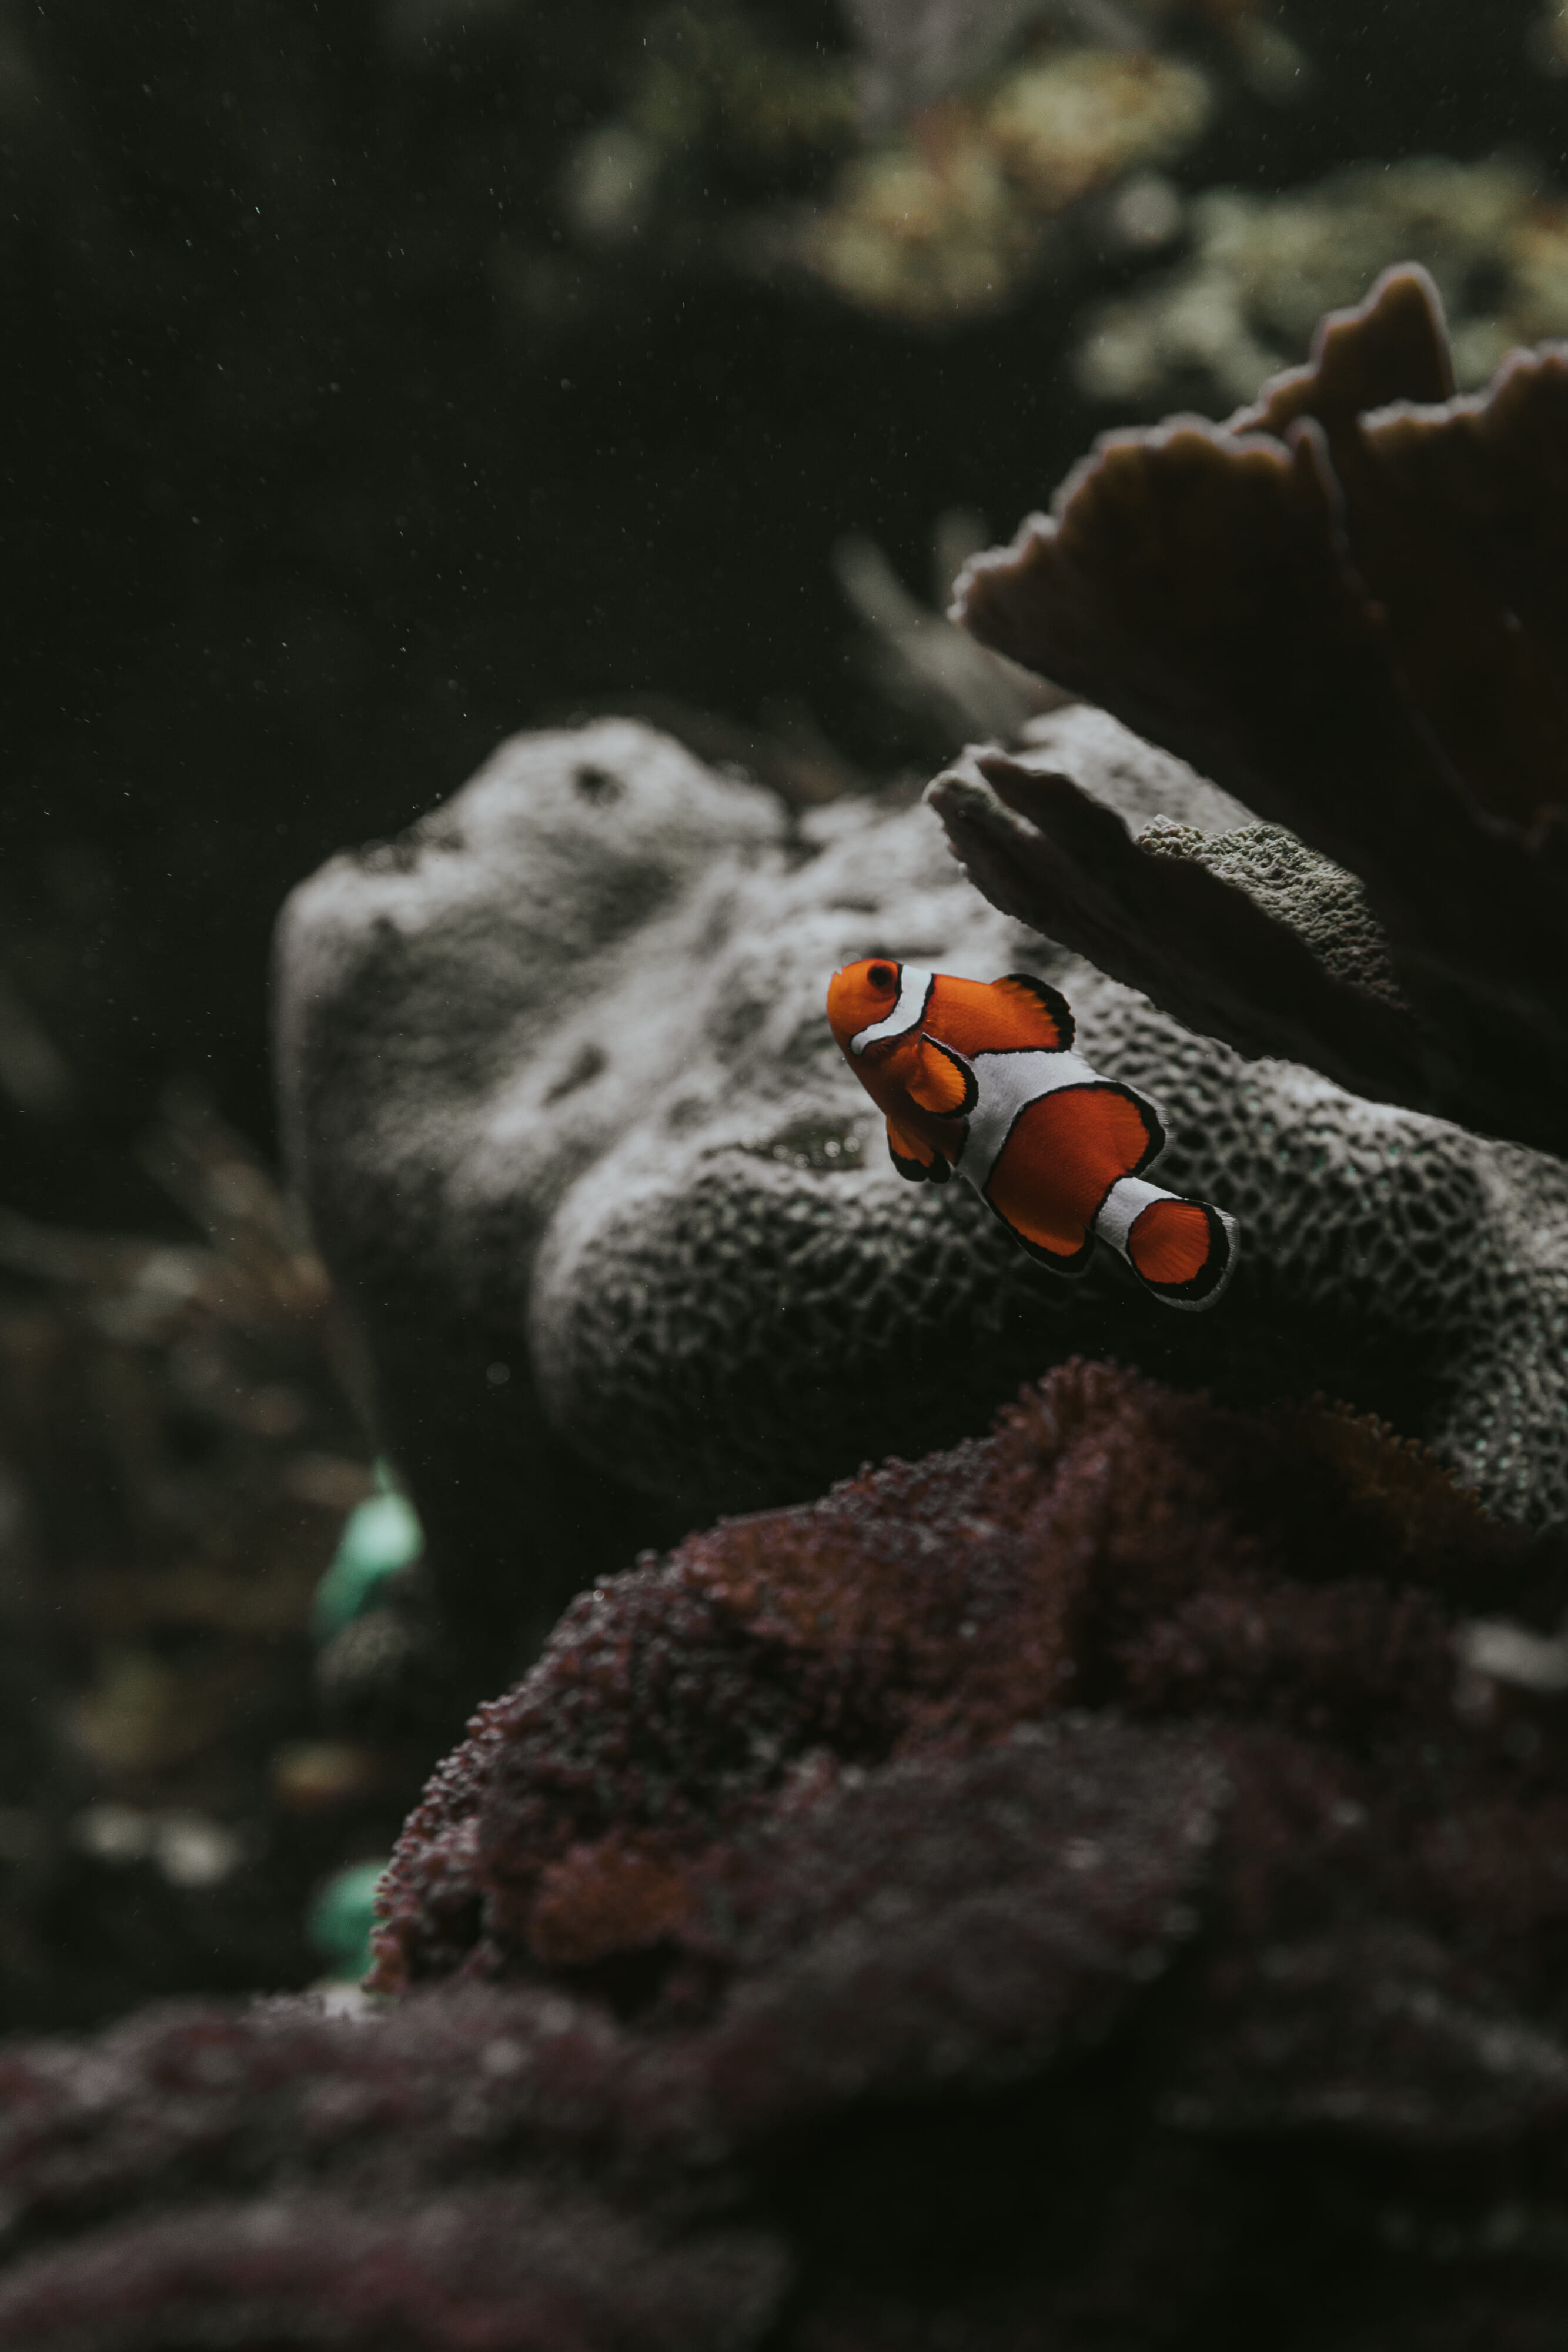 baltimore aquarium clown fish